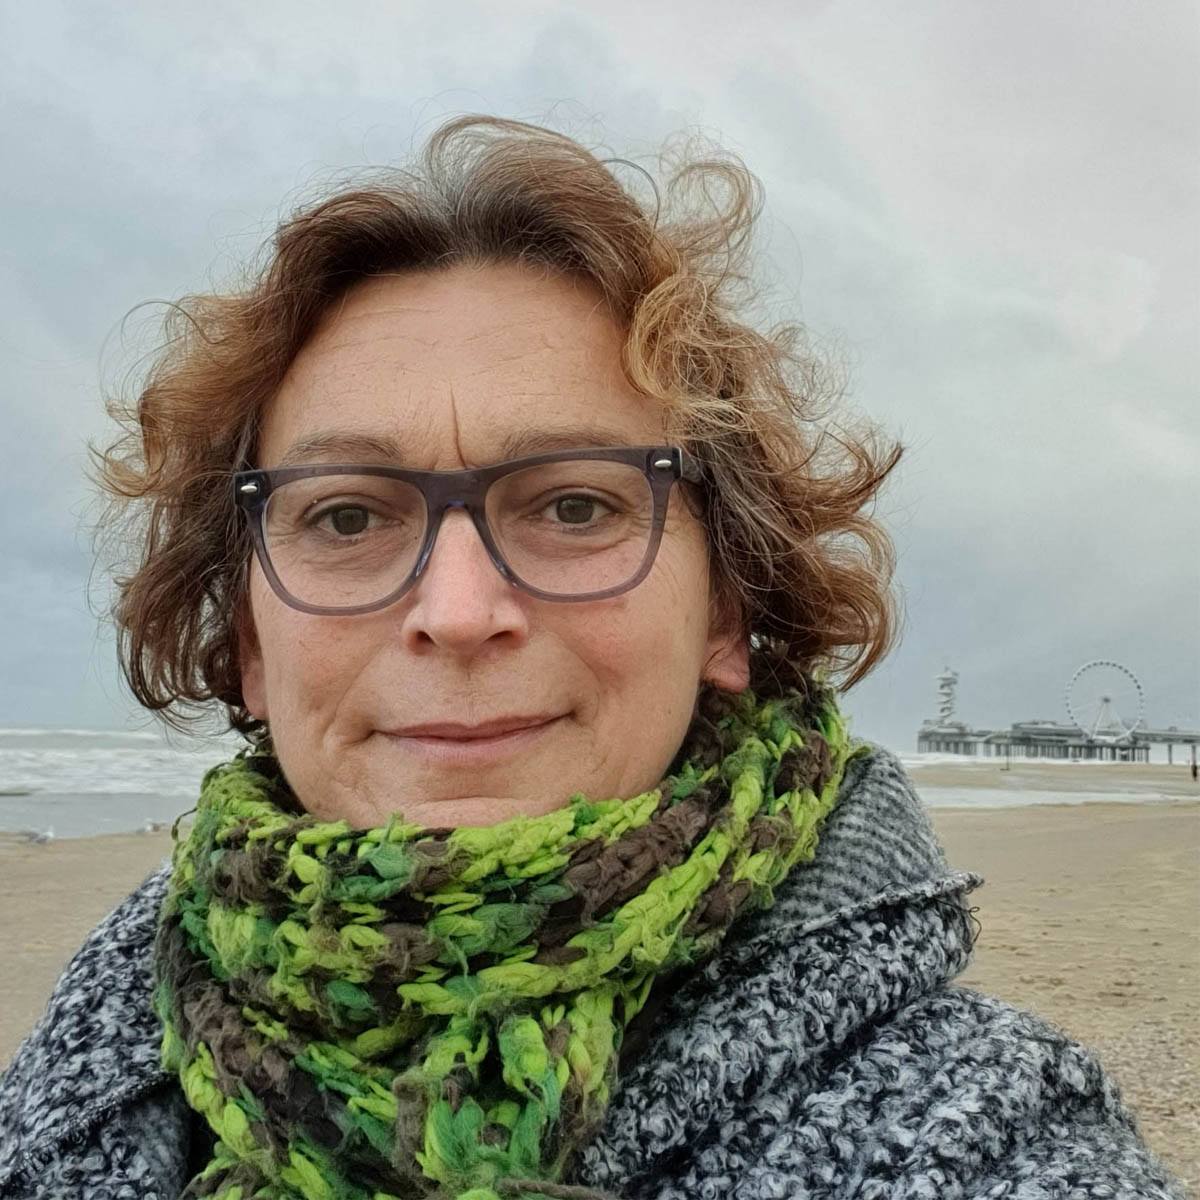 Portret van Willemijn op het strand. Ze draagt een bril en groene sjaal.